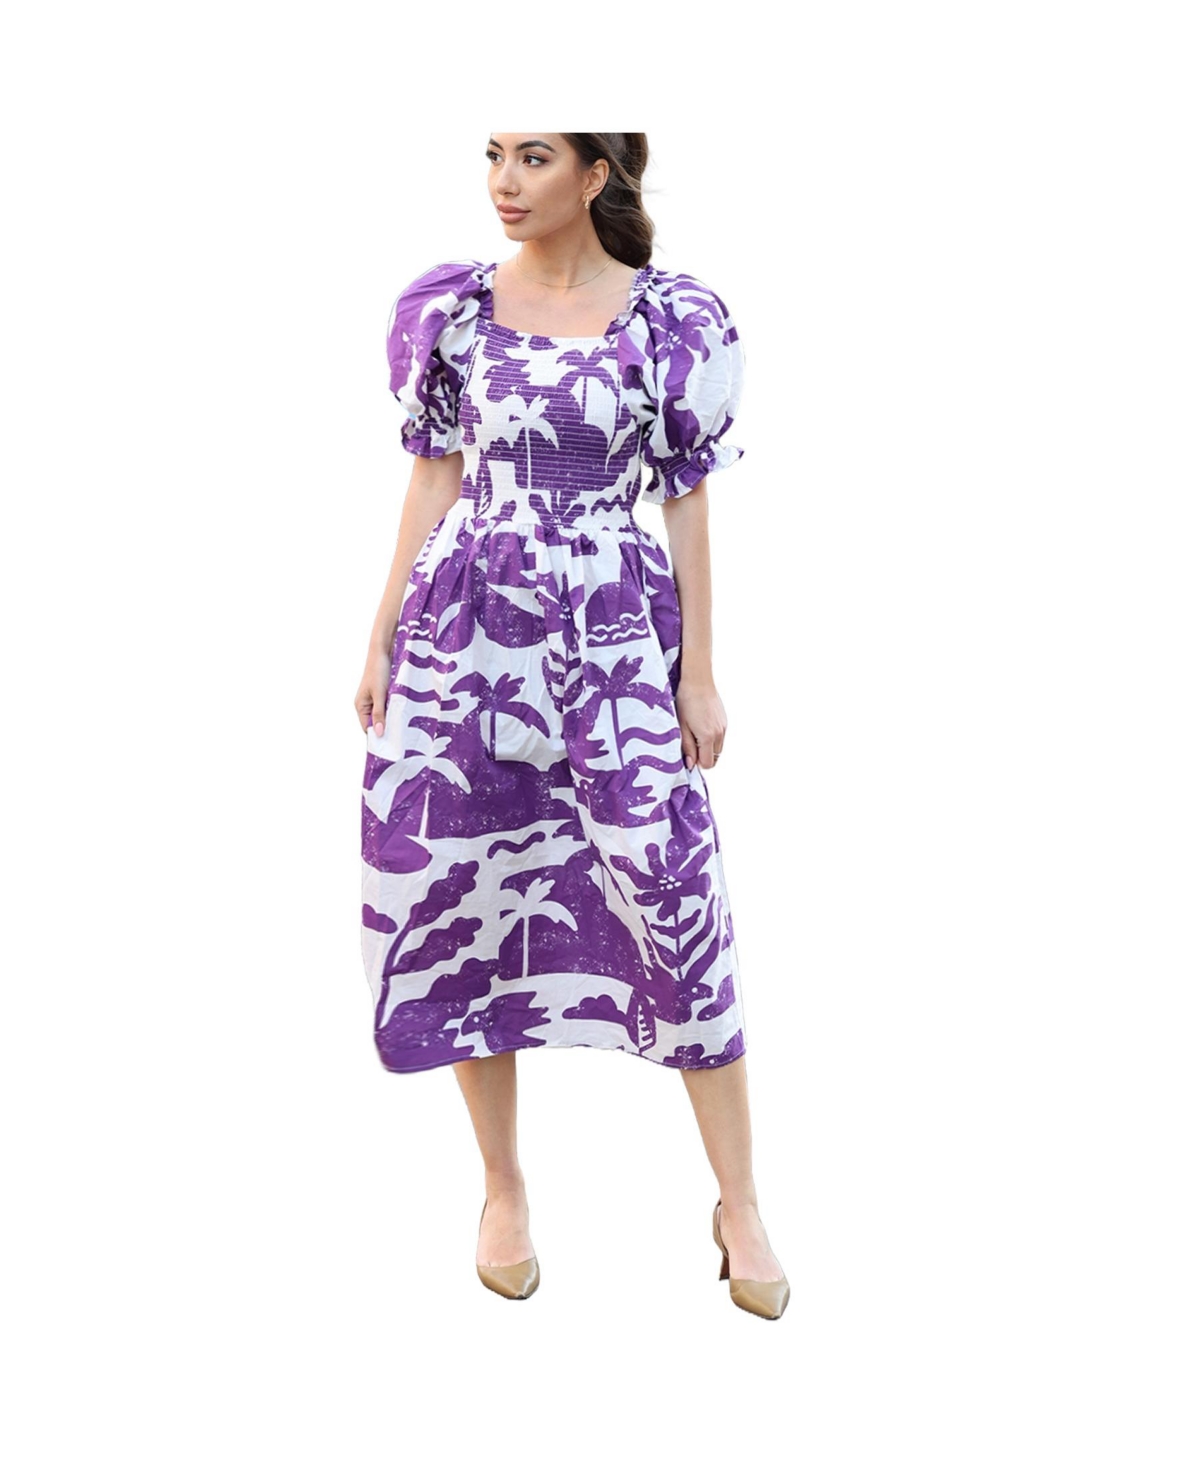 Malie Smocked Purple Midi Dress - Purple, white